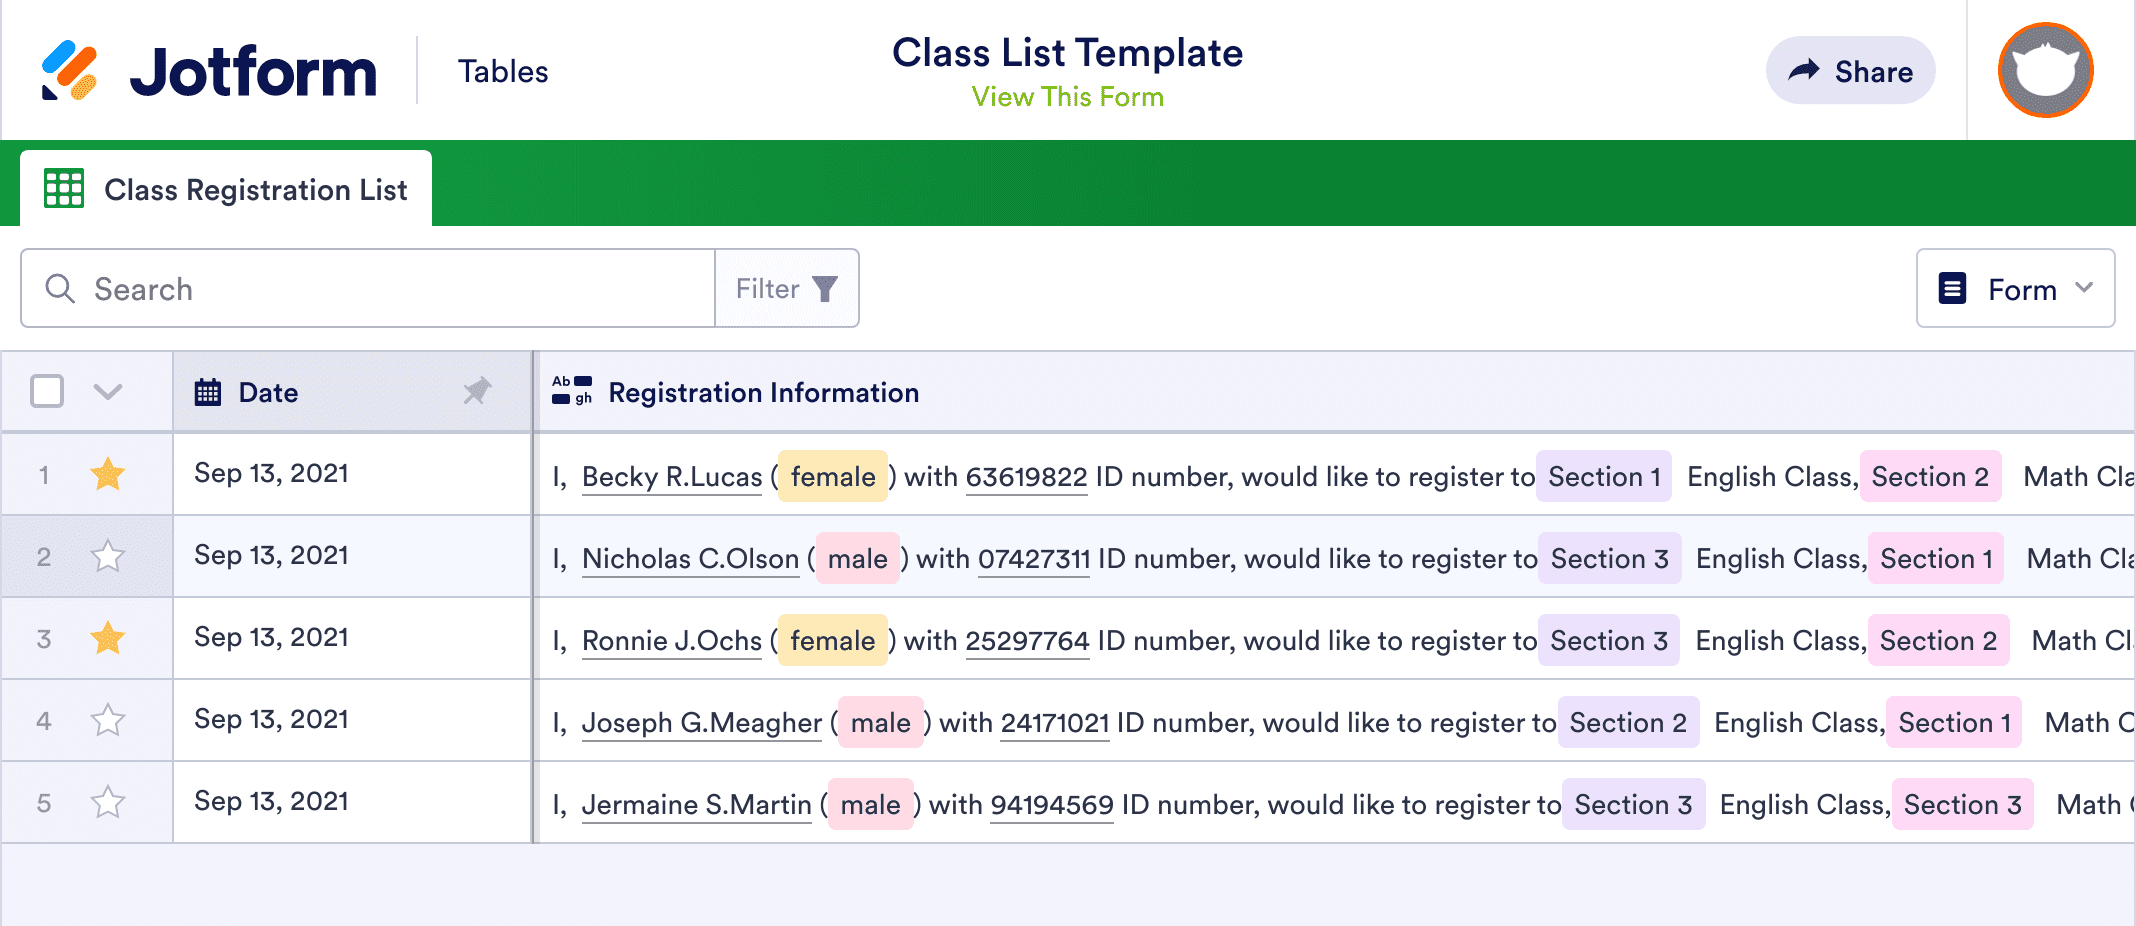 Class List Template